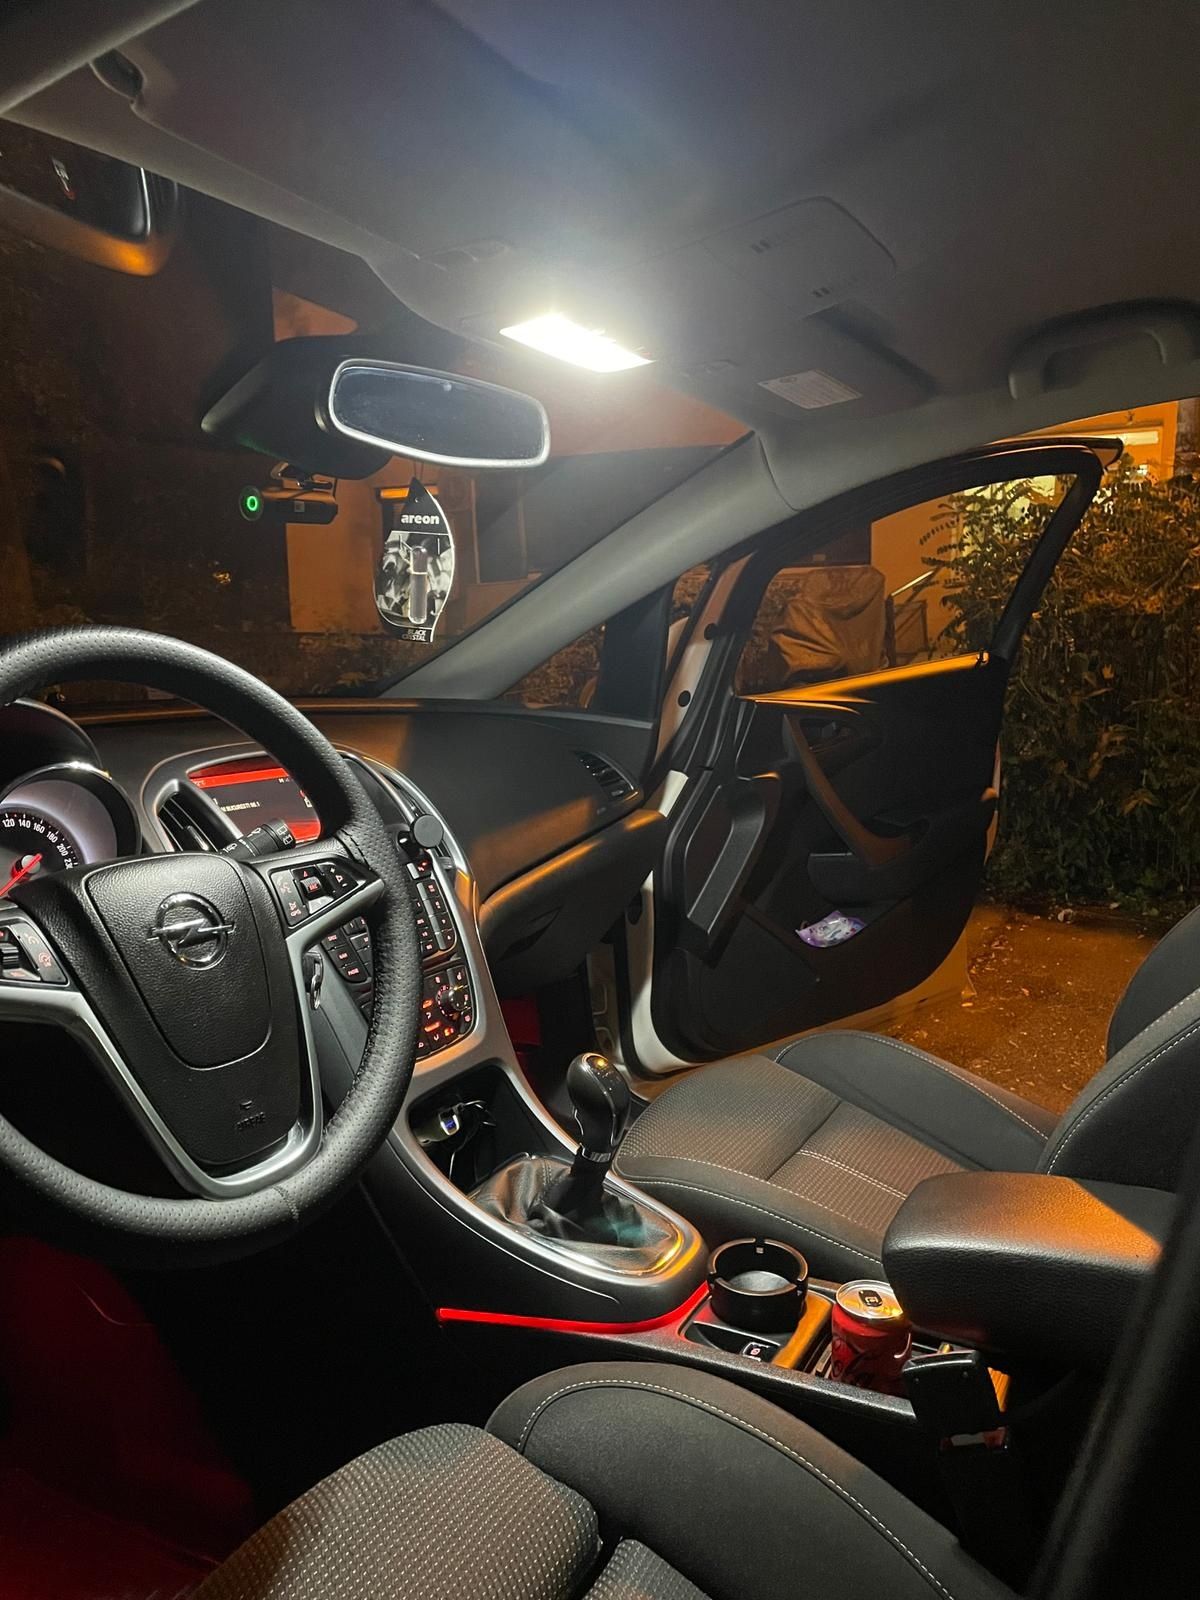 Leduri becuri interior auto lumini ambientale